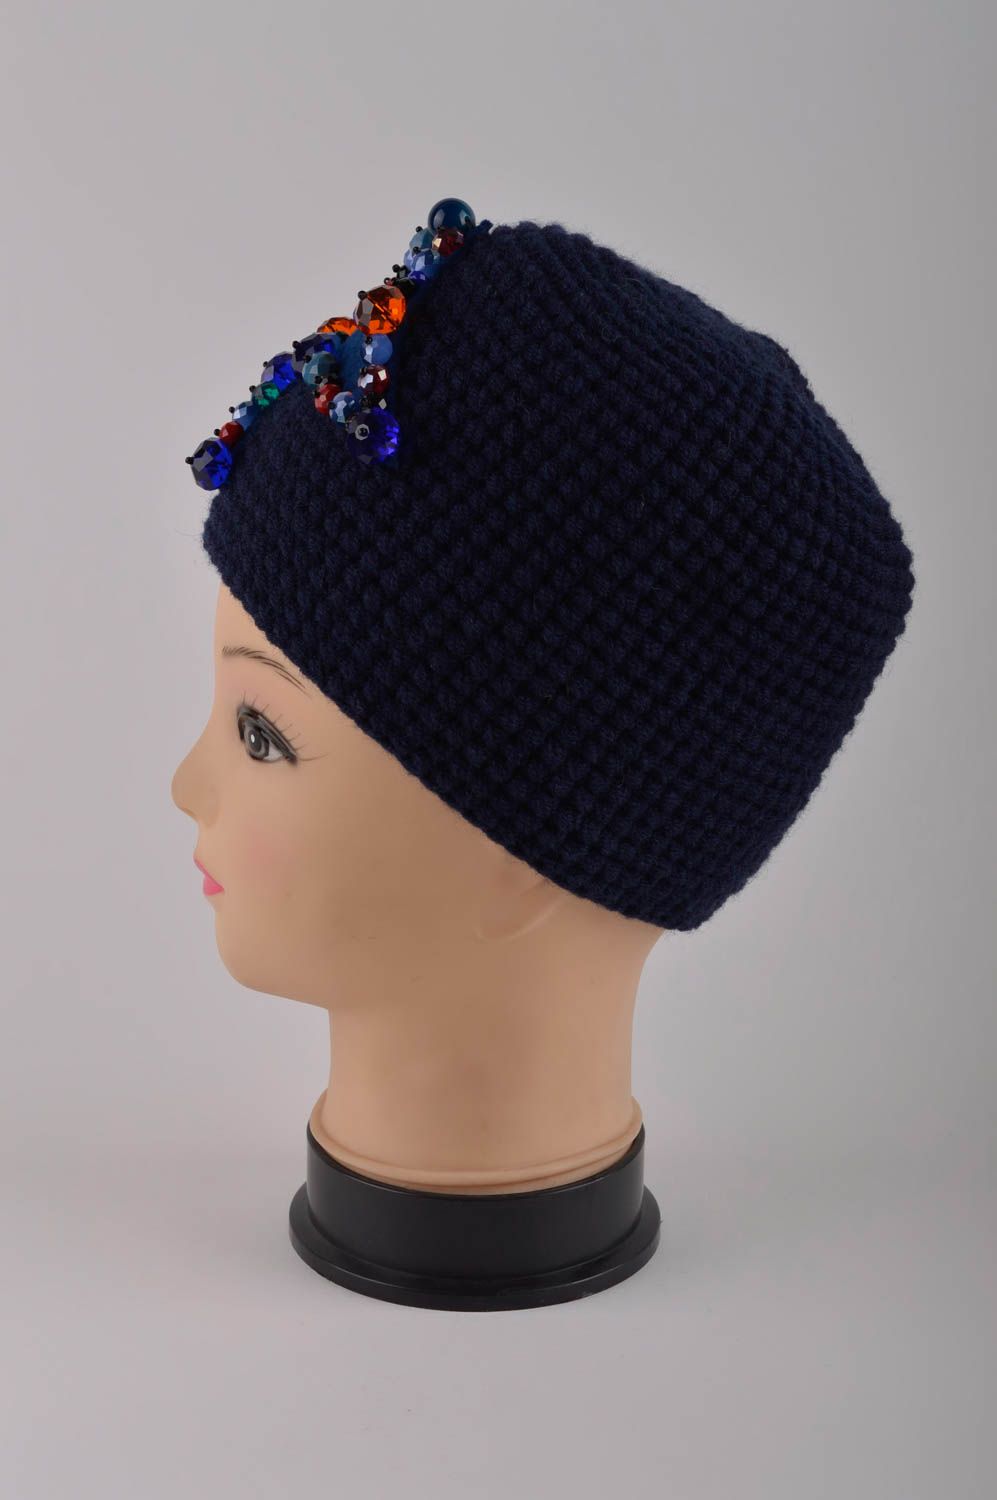 Handmade womens hat warm hat woolen hat designer accessories gifts for women photo 3